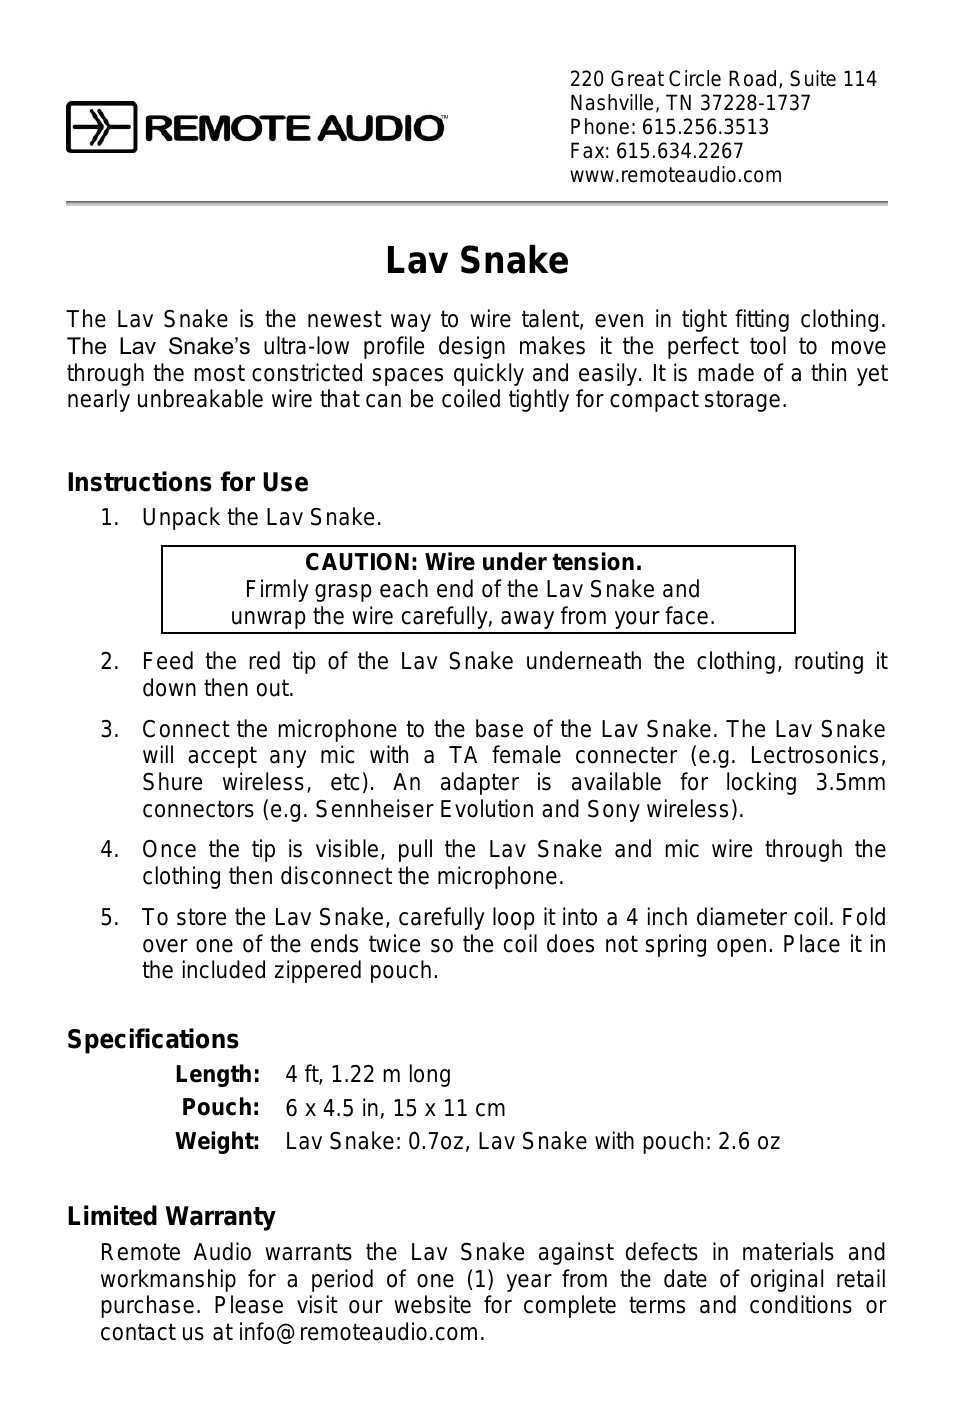 Lav Snake